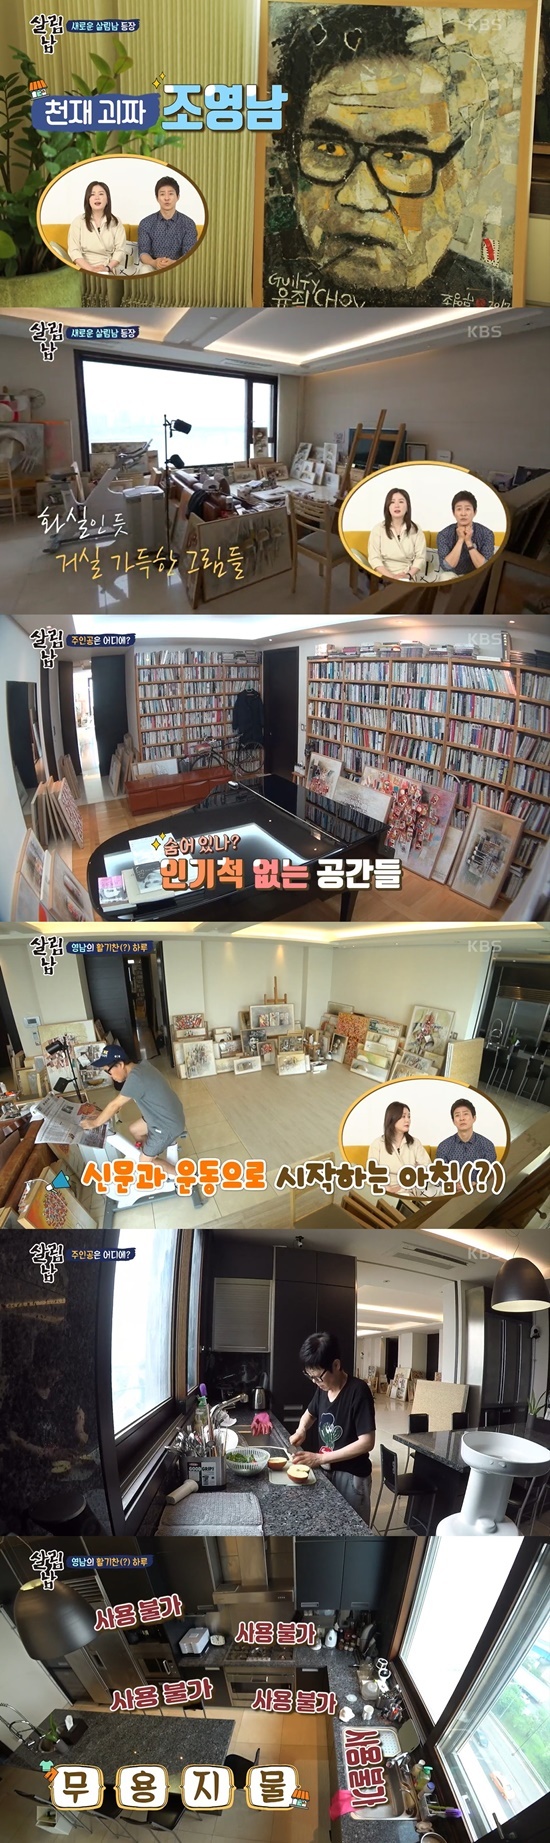 KBS 2TV '살림하는 남자들 시즌2'방송 화면 캡처 © 뉴스1